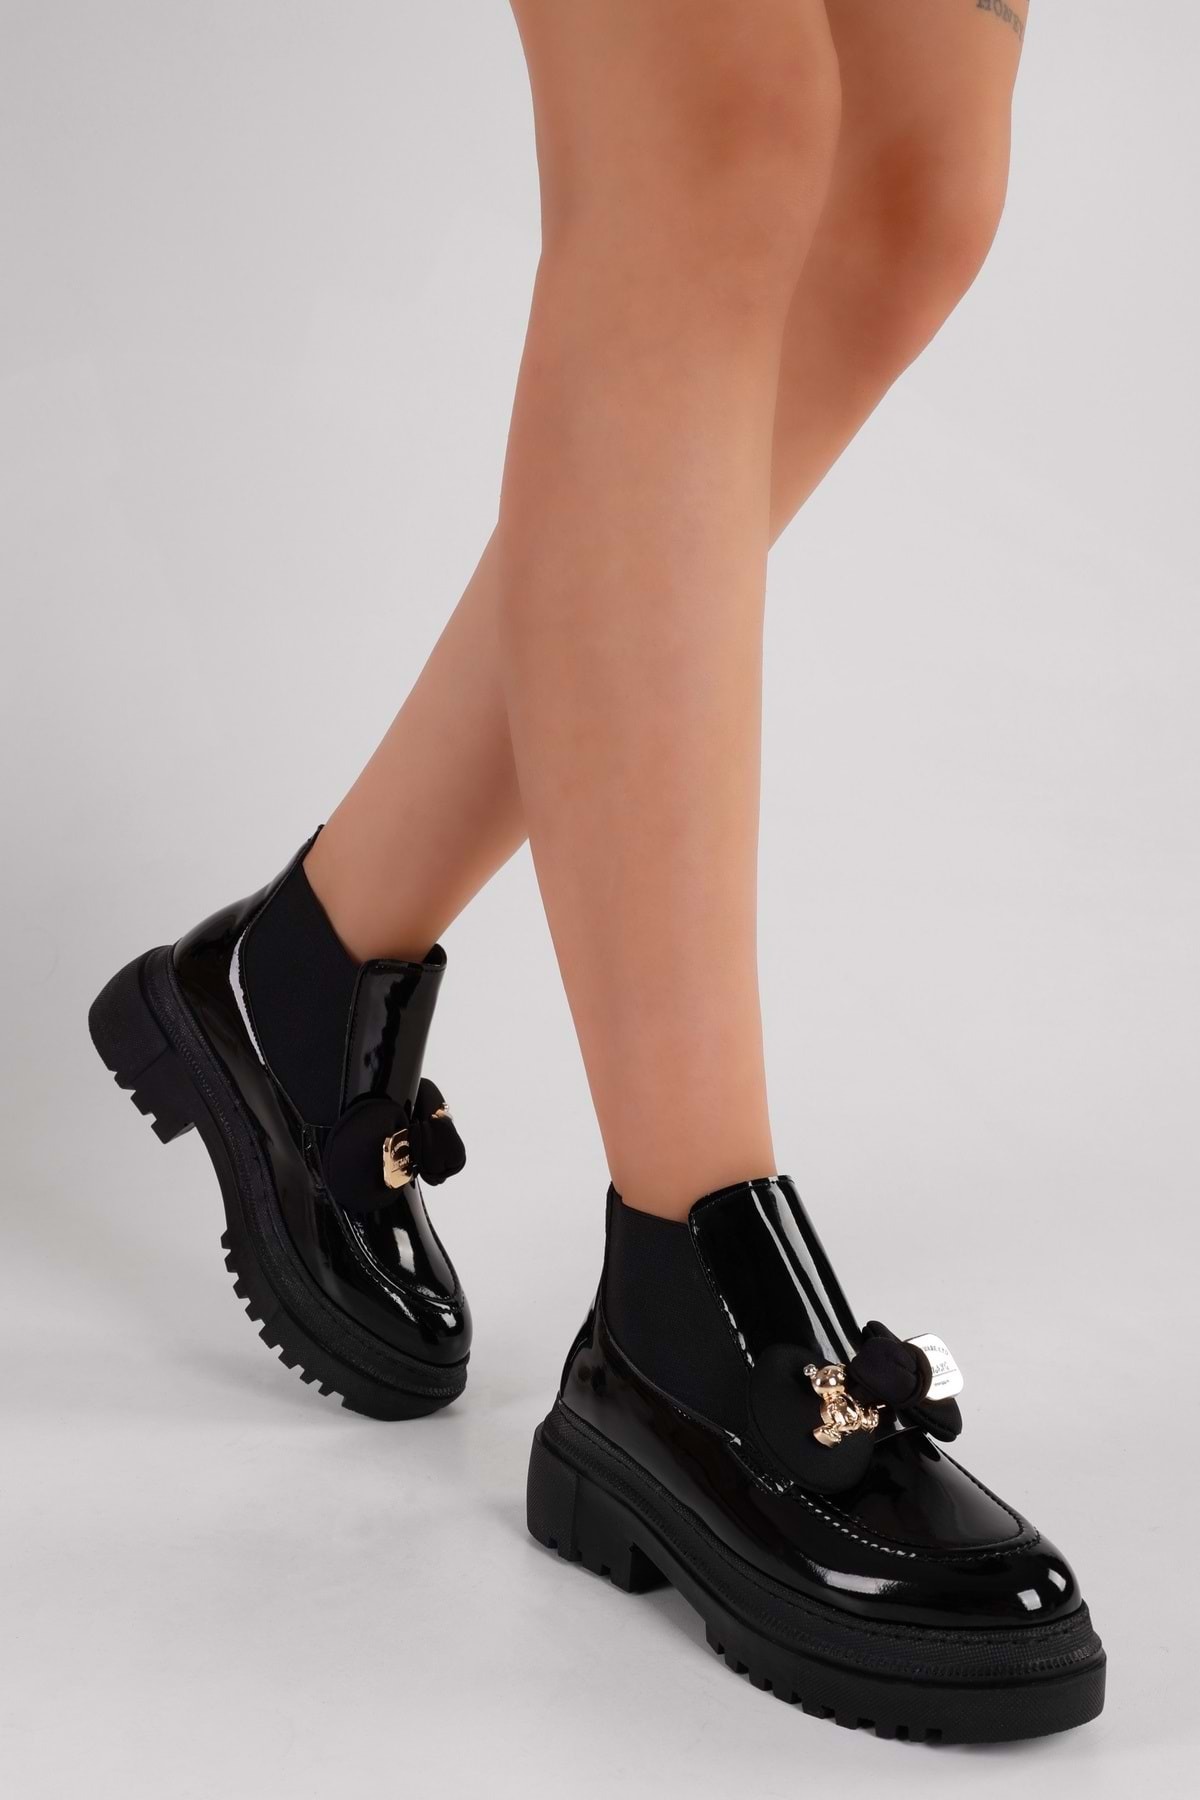 Levně Shoeberry Women's Mottox Black Patent Leather Boots Loafer Black Patent Leather